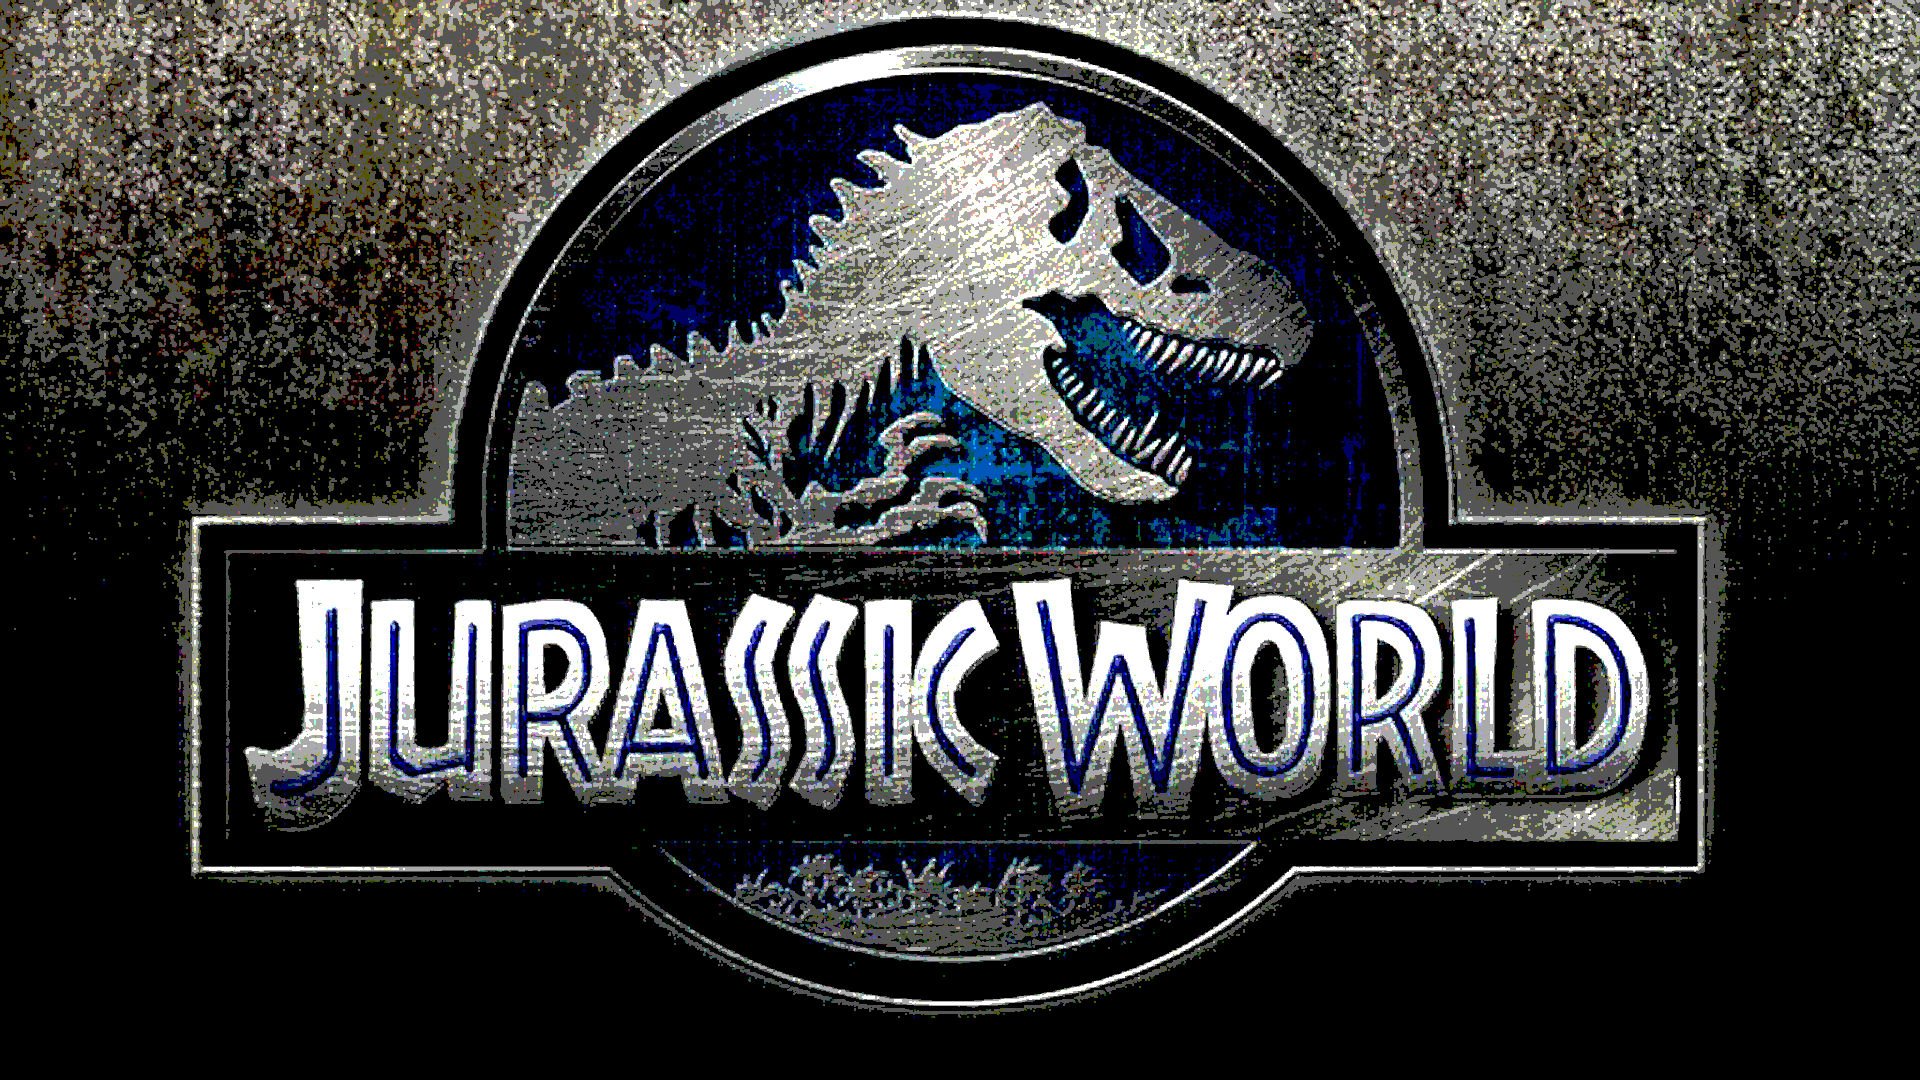 Jurassic World Adventure Sci Fi Dinosaur Fantasy Film Park